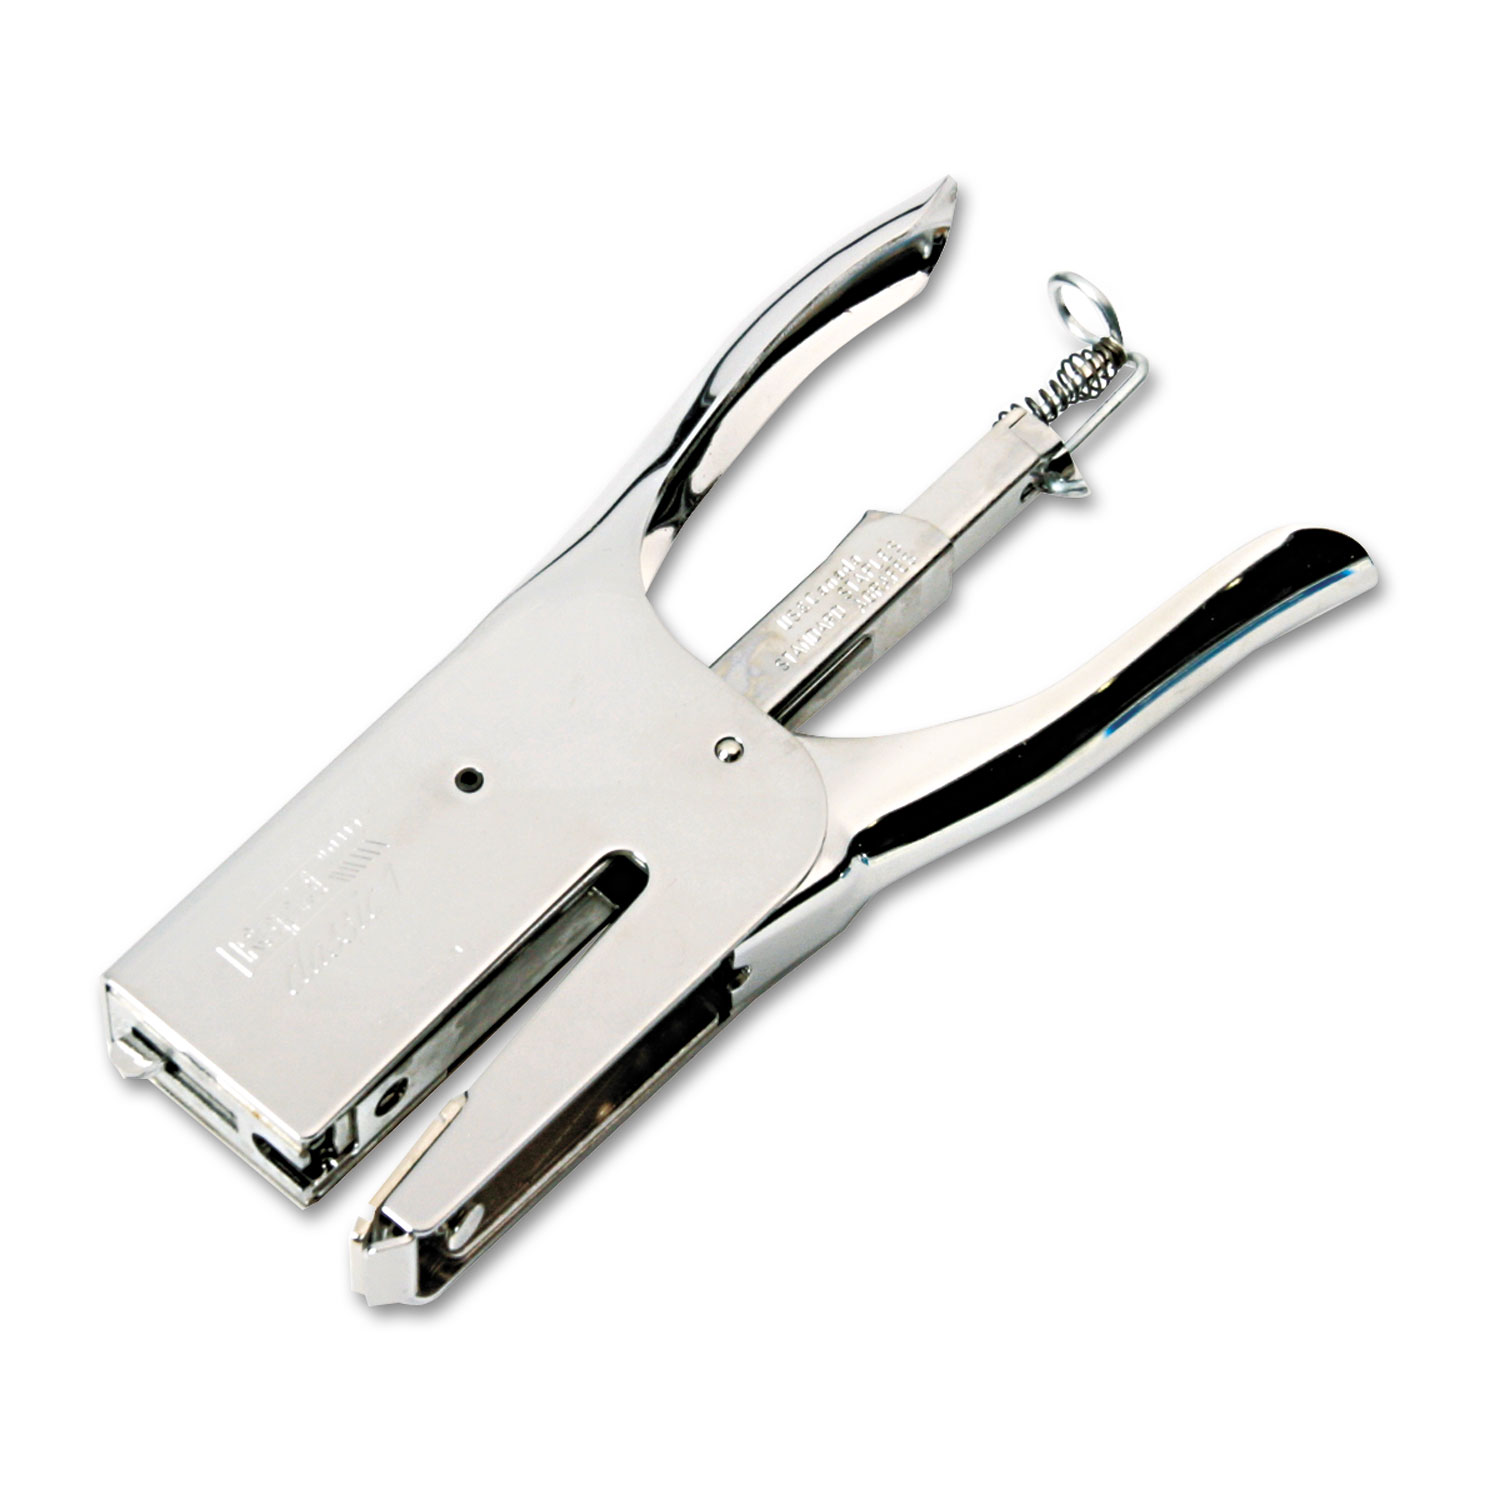 Rapid Classic K1 Plier Stapler - 50 Sheets Capacity - Full Strip - 5/16" , 1/4" Staple Size - Chrome